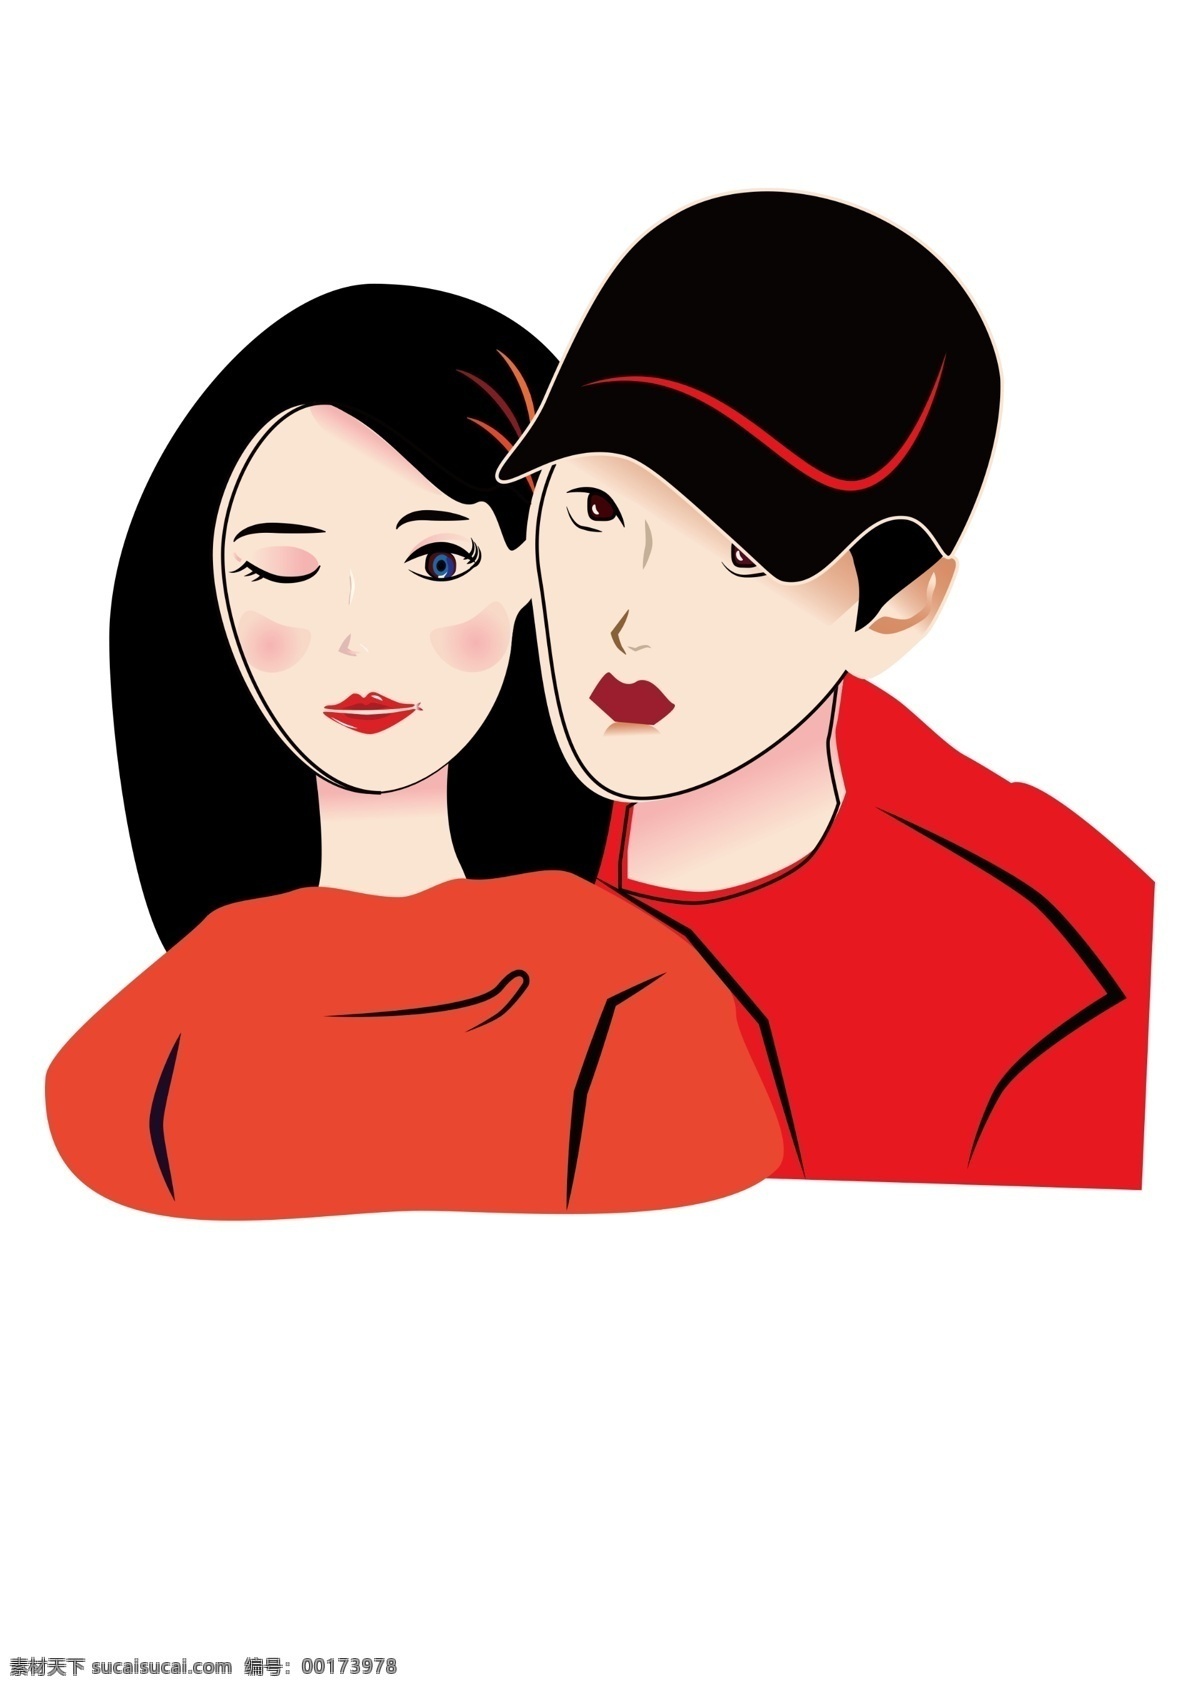 相拥的情侣 商业用图 相 拥 男女 情侣 红色 长发少女 戴帽子的少年 杂志用图 插画 矢量结构用图